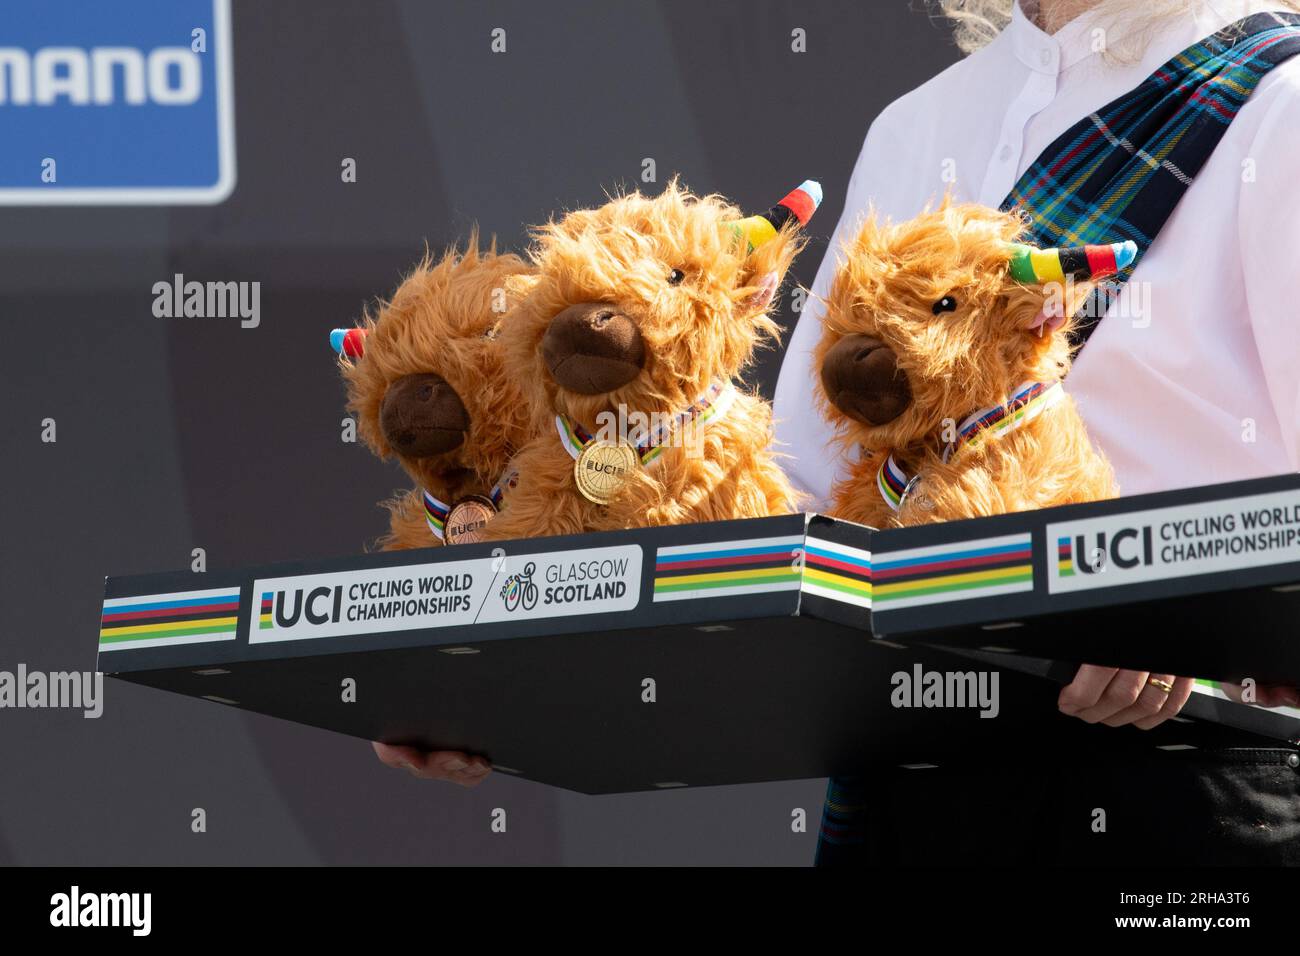 Championnats du monde de cyclisme UCI 2023 - cadeaux moelleux de vache des hautes terres présentés aux gagnants avec des médailles Banque D'Images